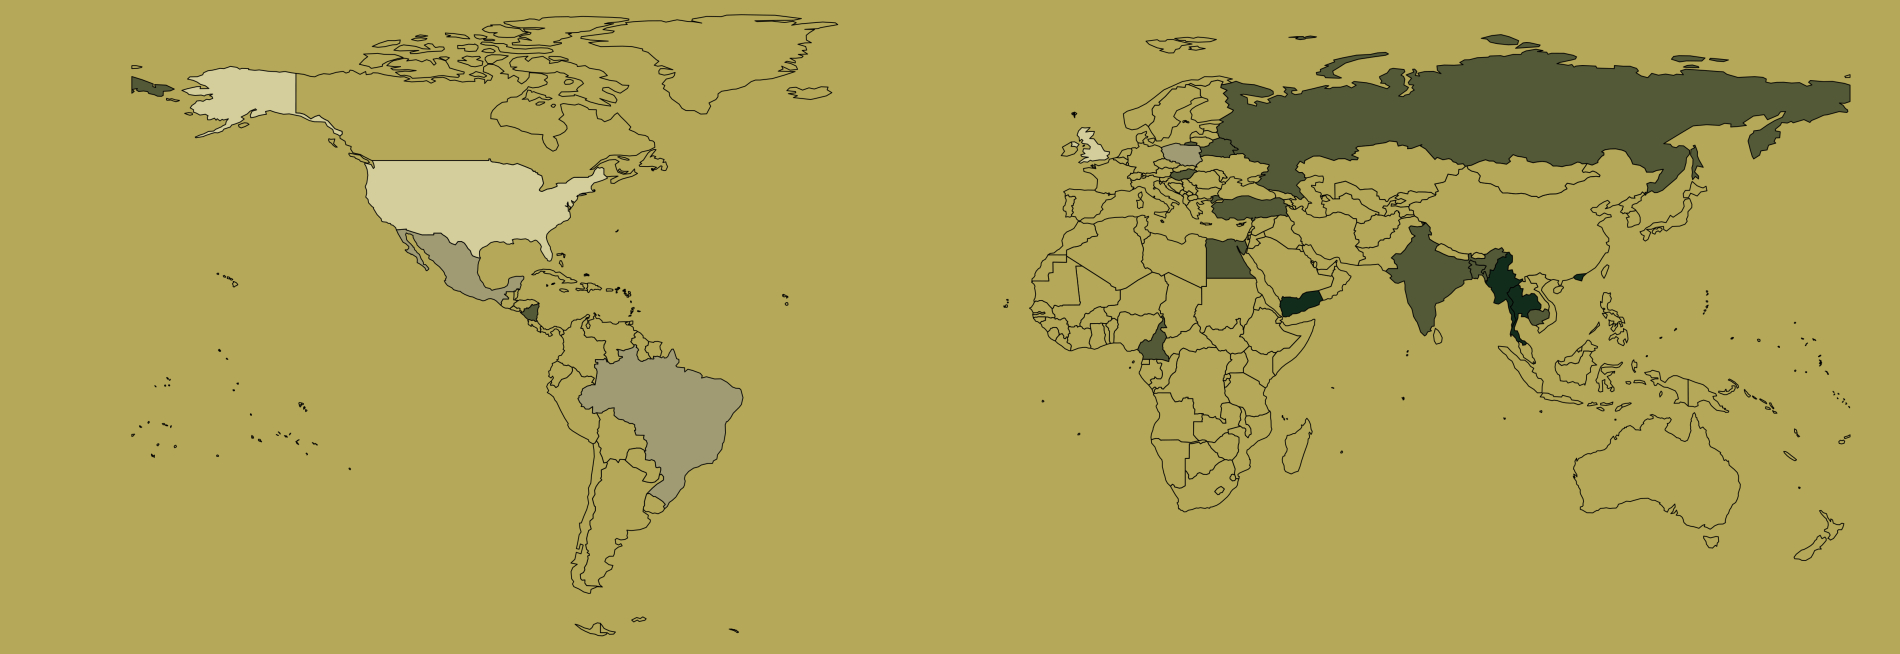 Weltkarte mit Ländern in verschiedenen Farben markiert, die den jeweiligen Grad der Wissenschaftsfreiheit anzeigen.